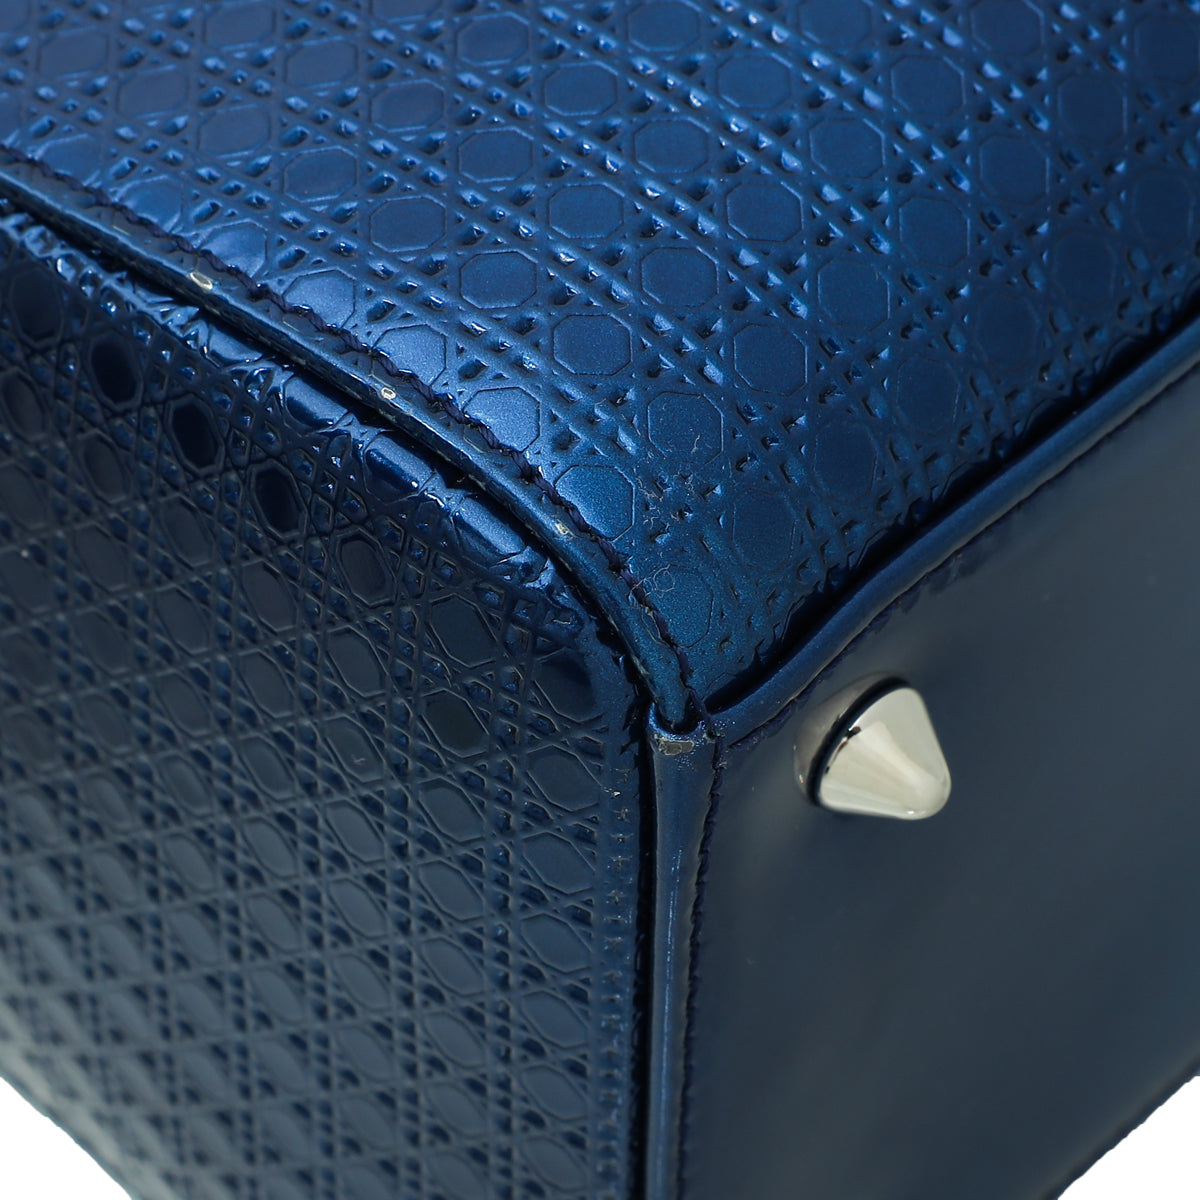 Christian Dior Blue Lady Dior Micro Cannage Medium Bag